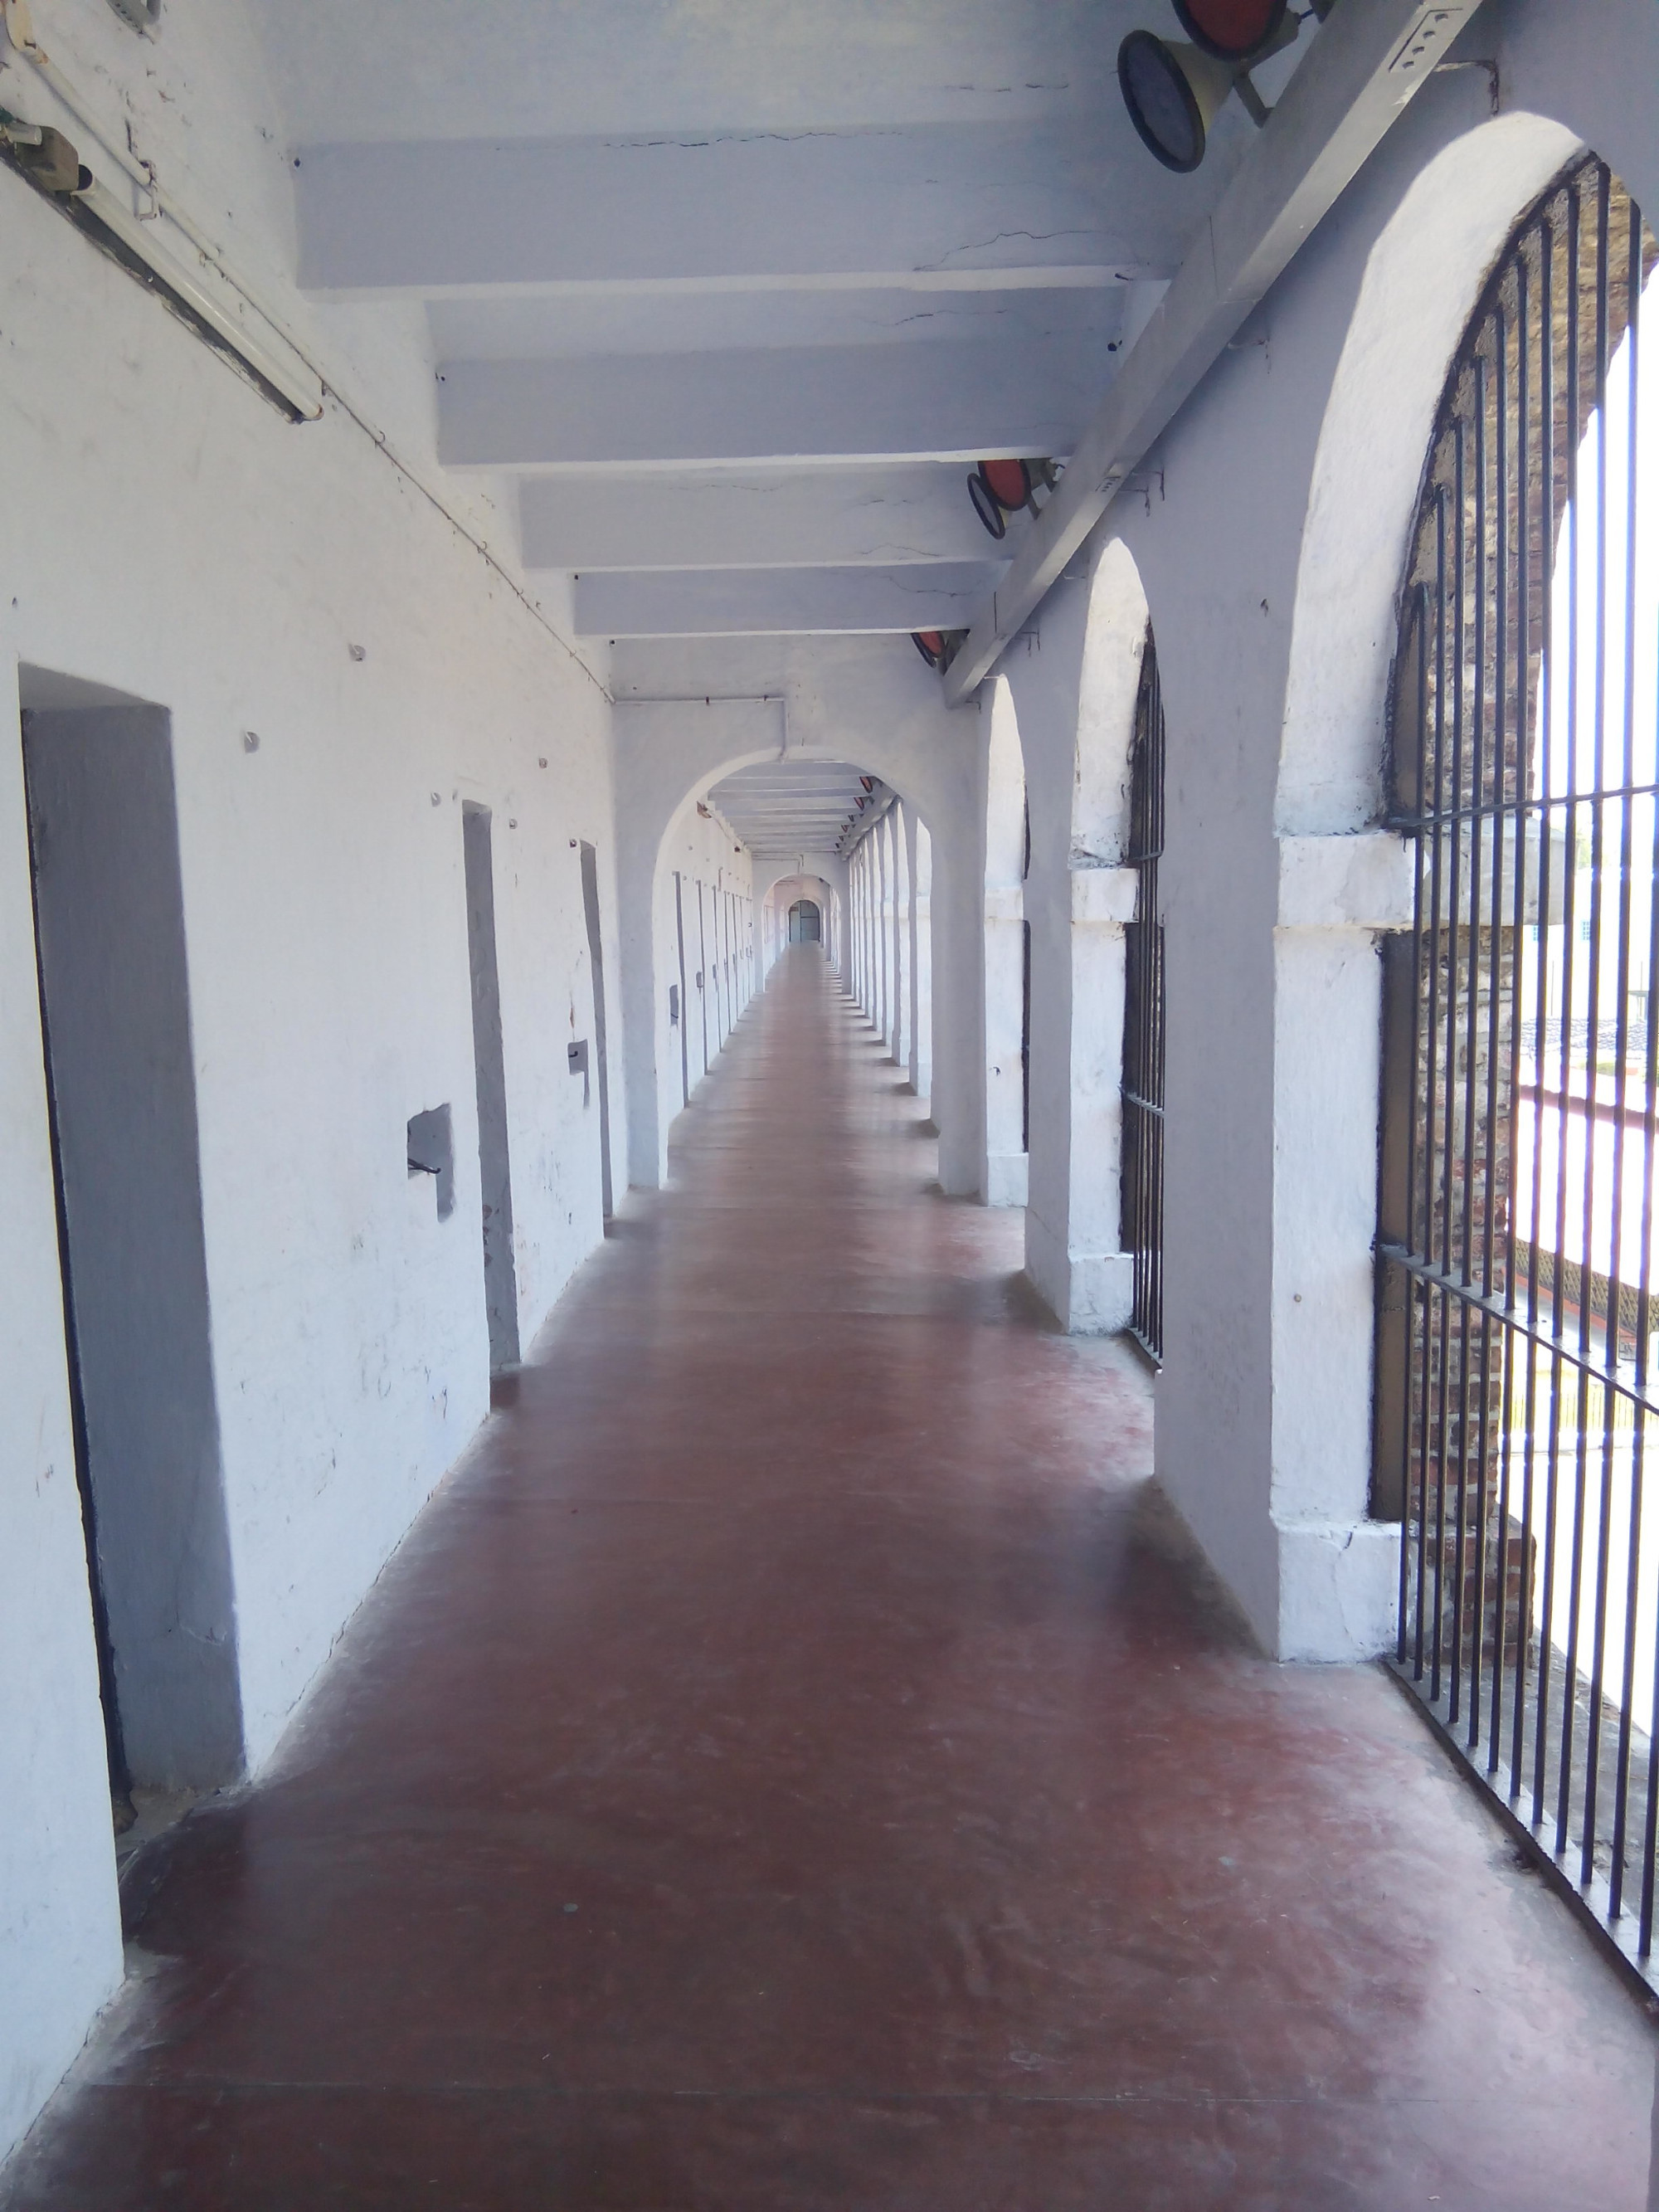 Cellular Jail (Port Blair, Andaman Islands, India)